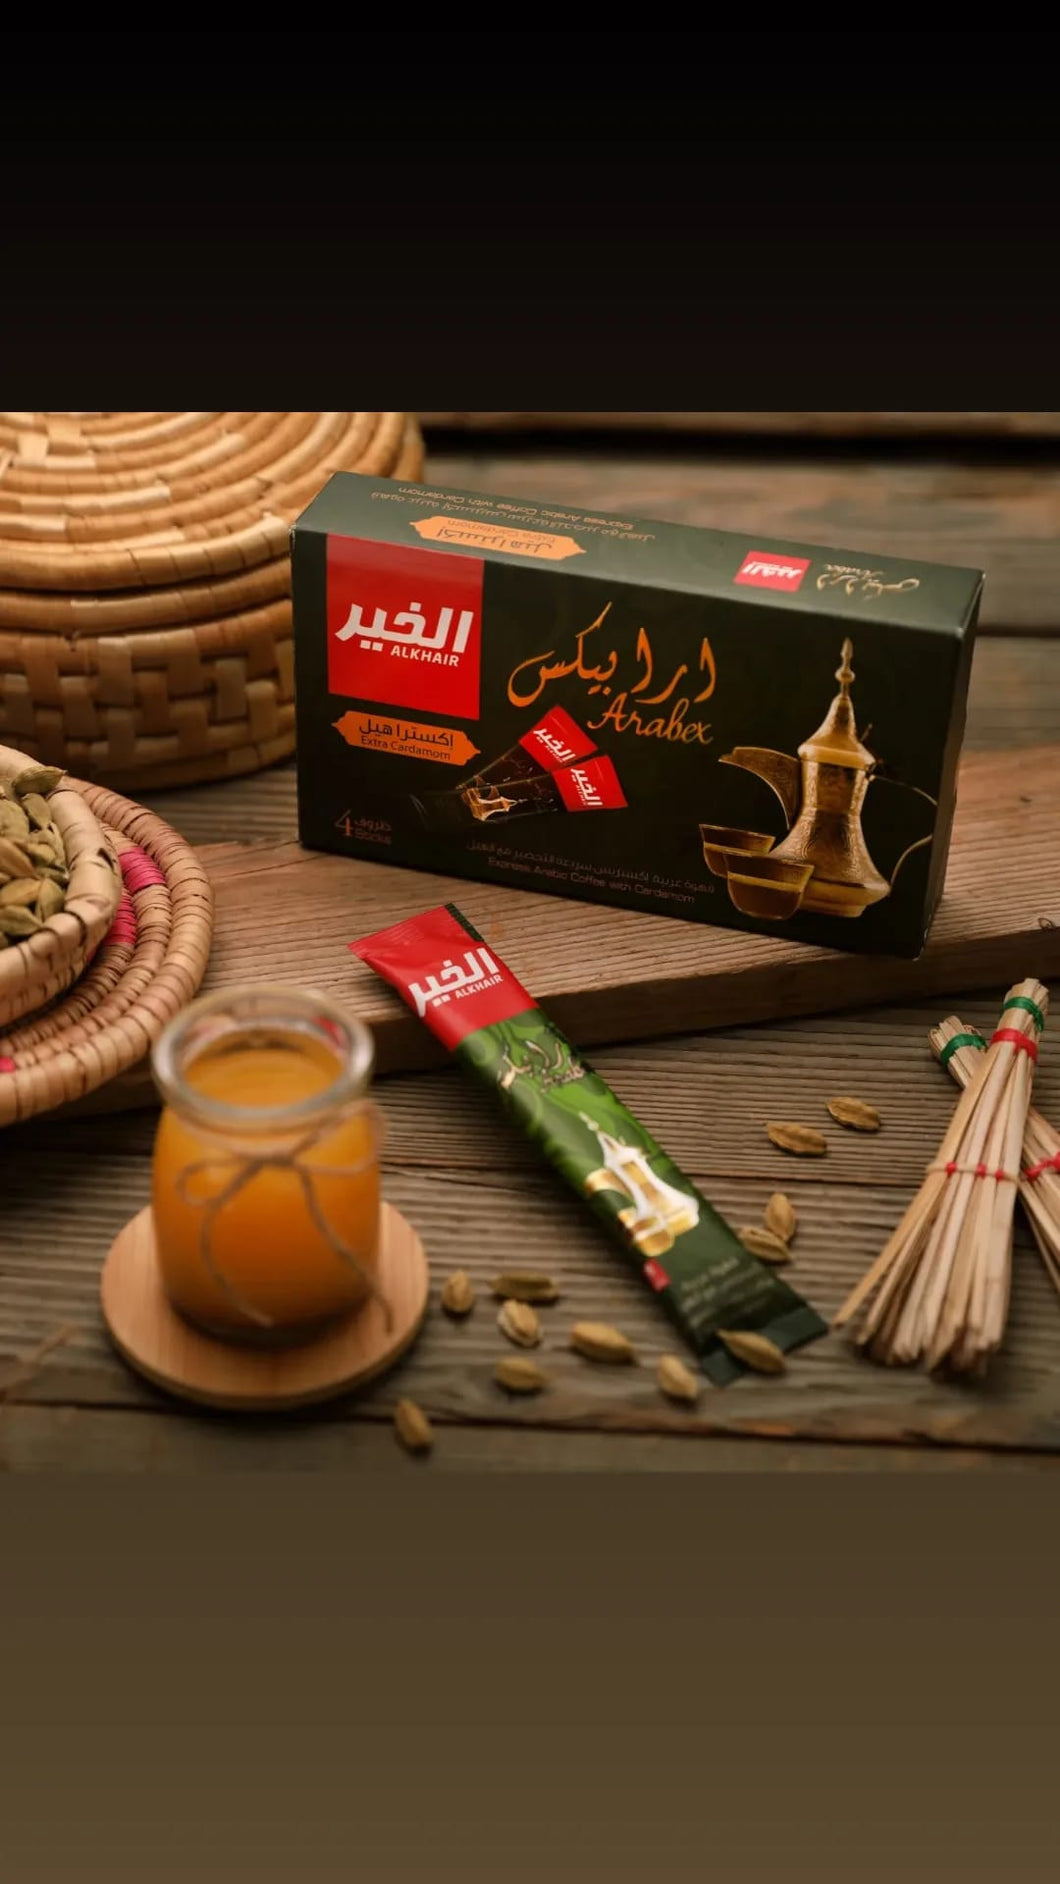 Al Khair Coffee sachets